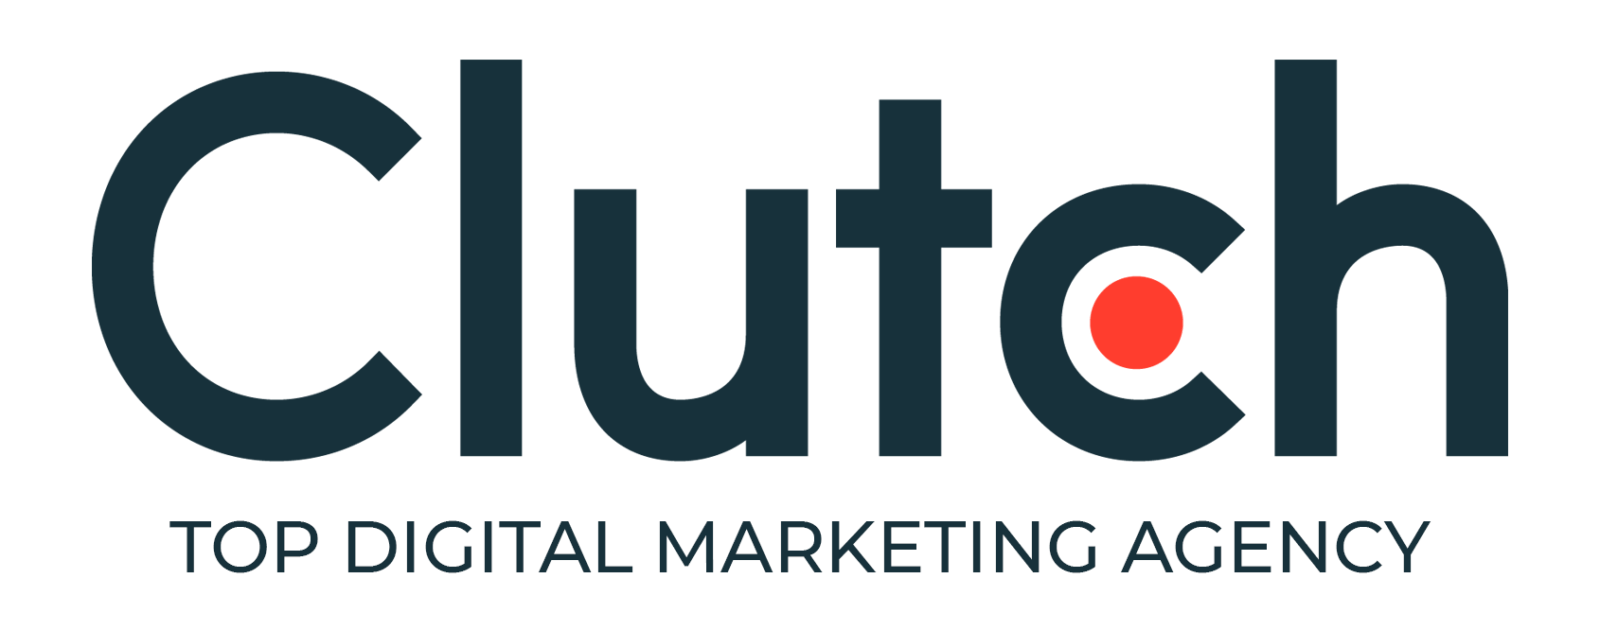 Digital Marketing Agency Clutch